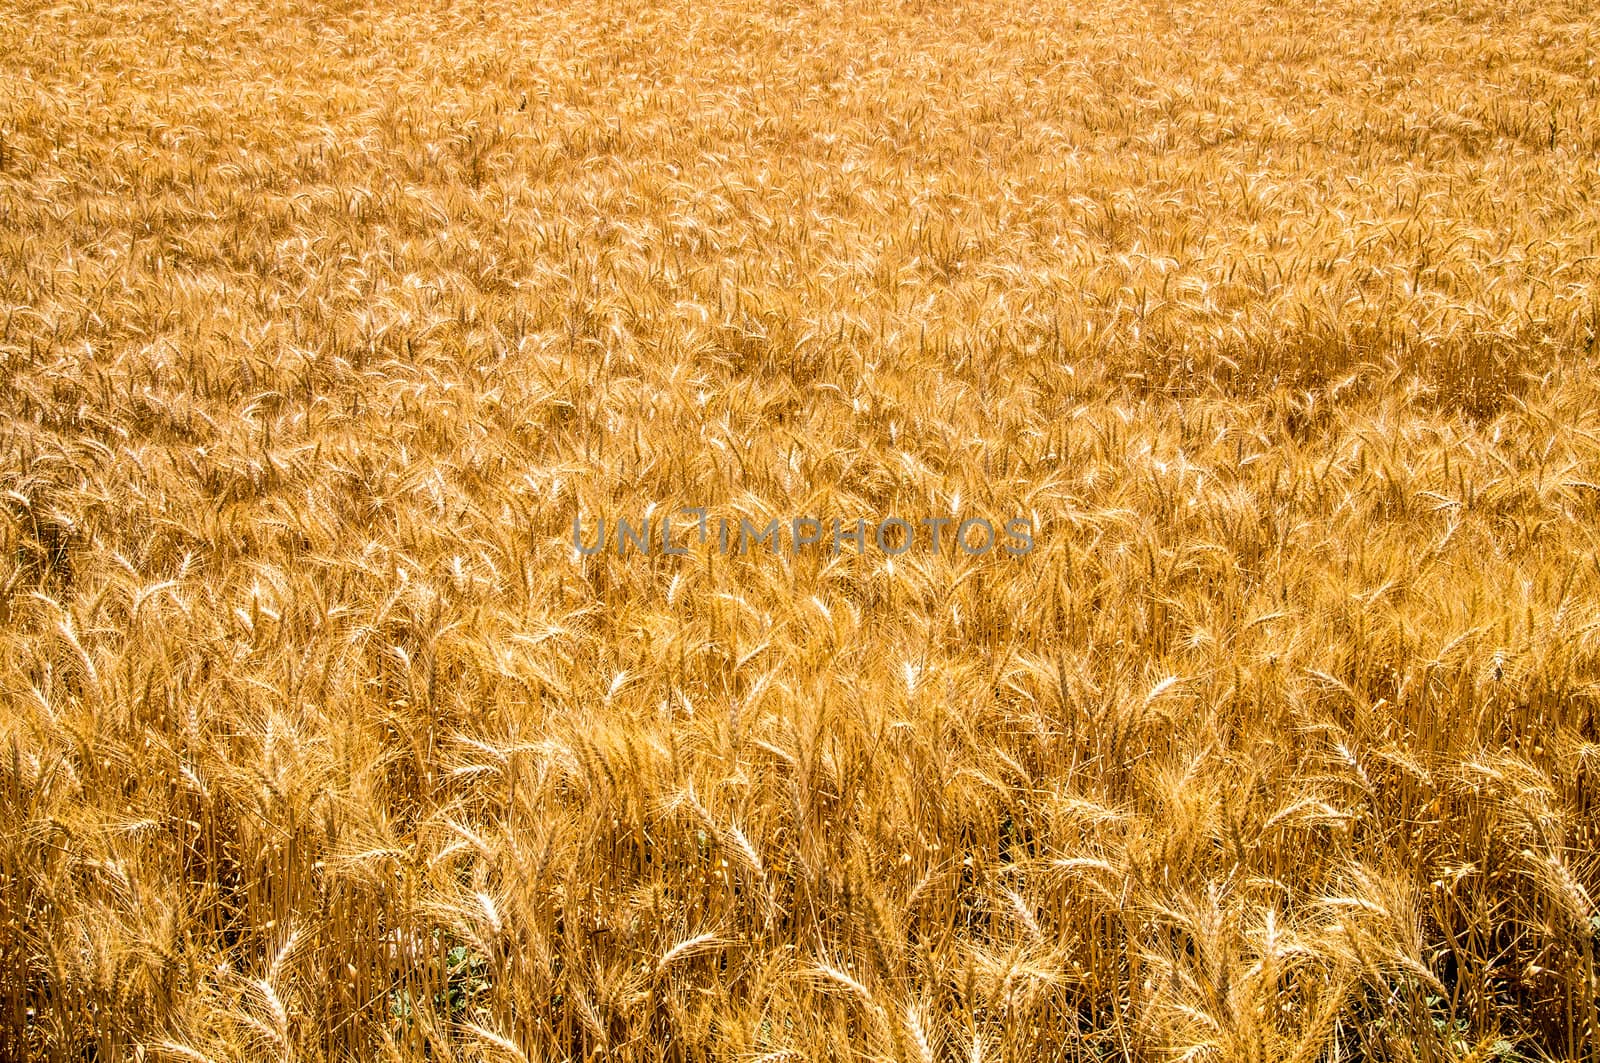 Golden Wheat by emattil